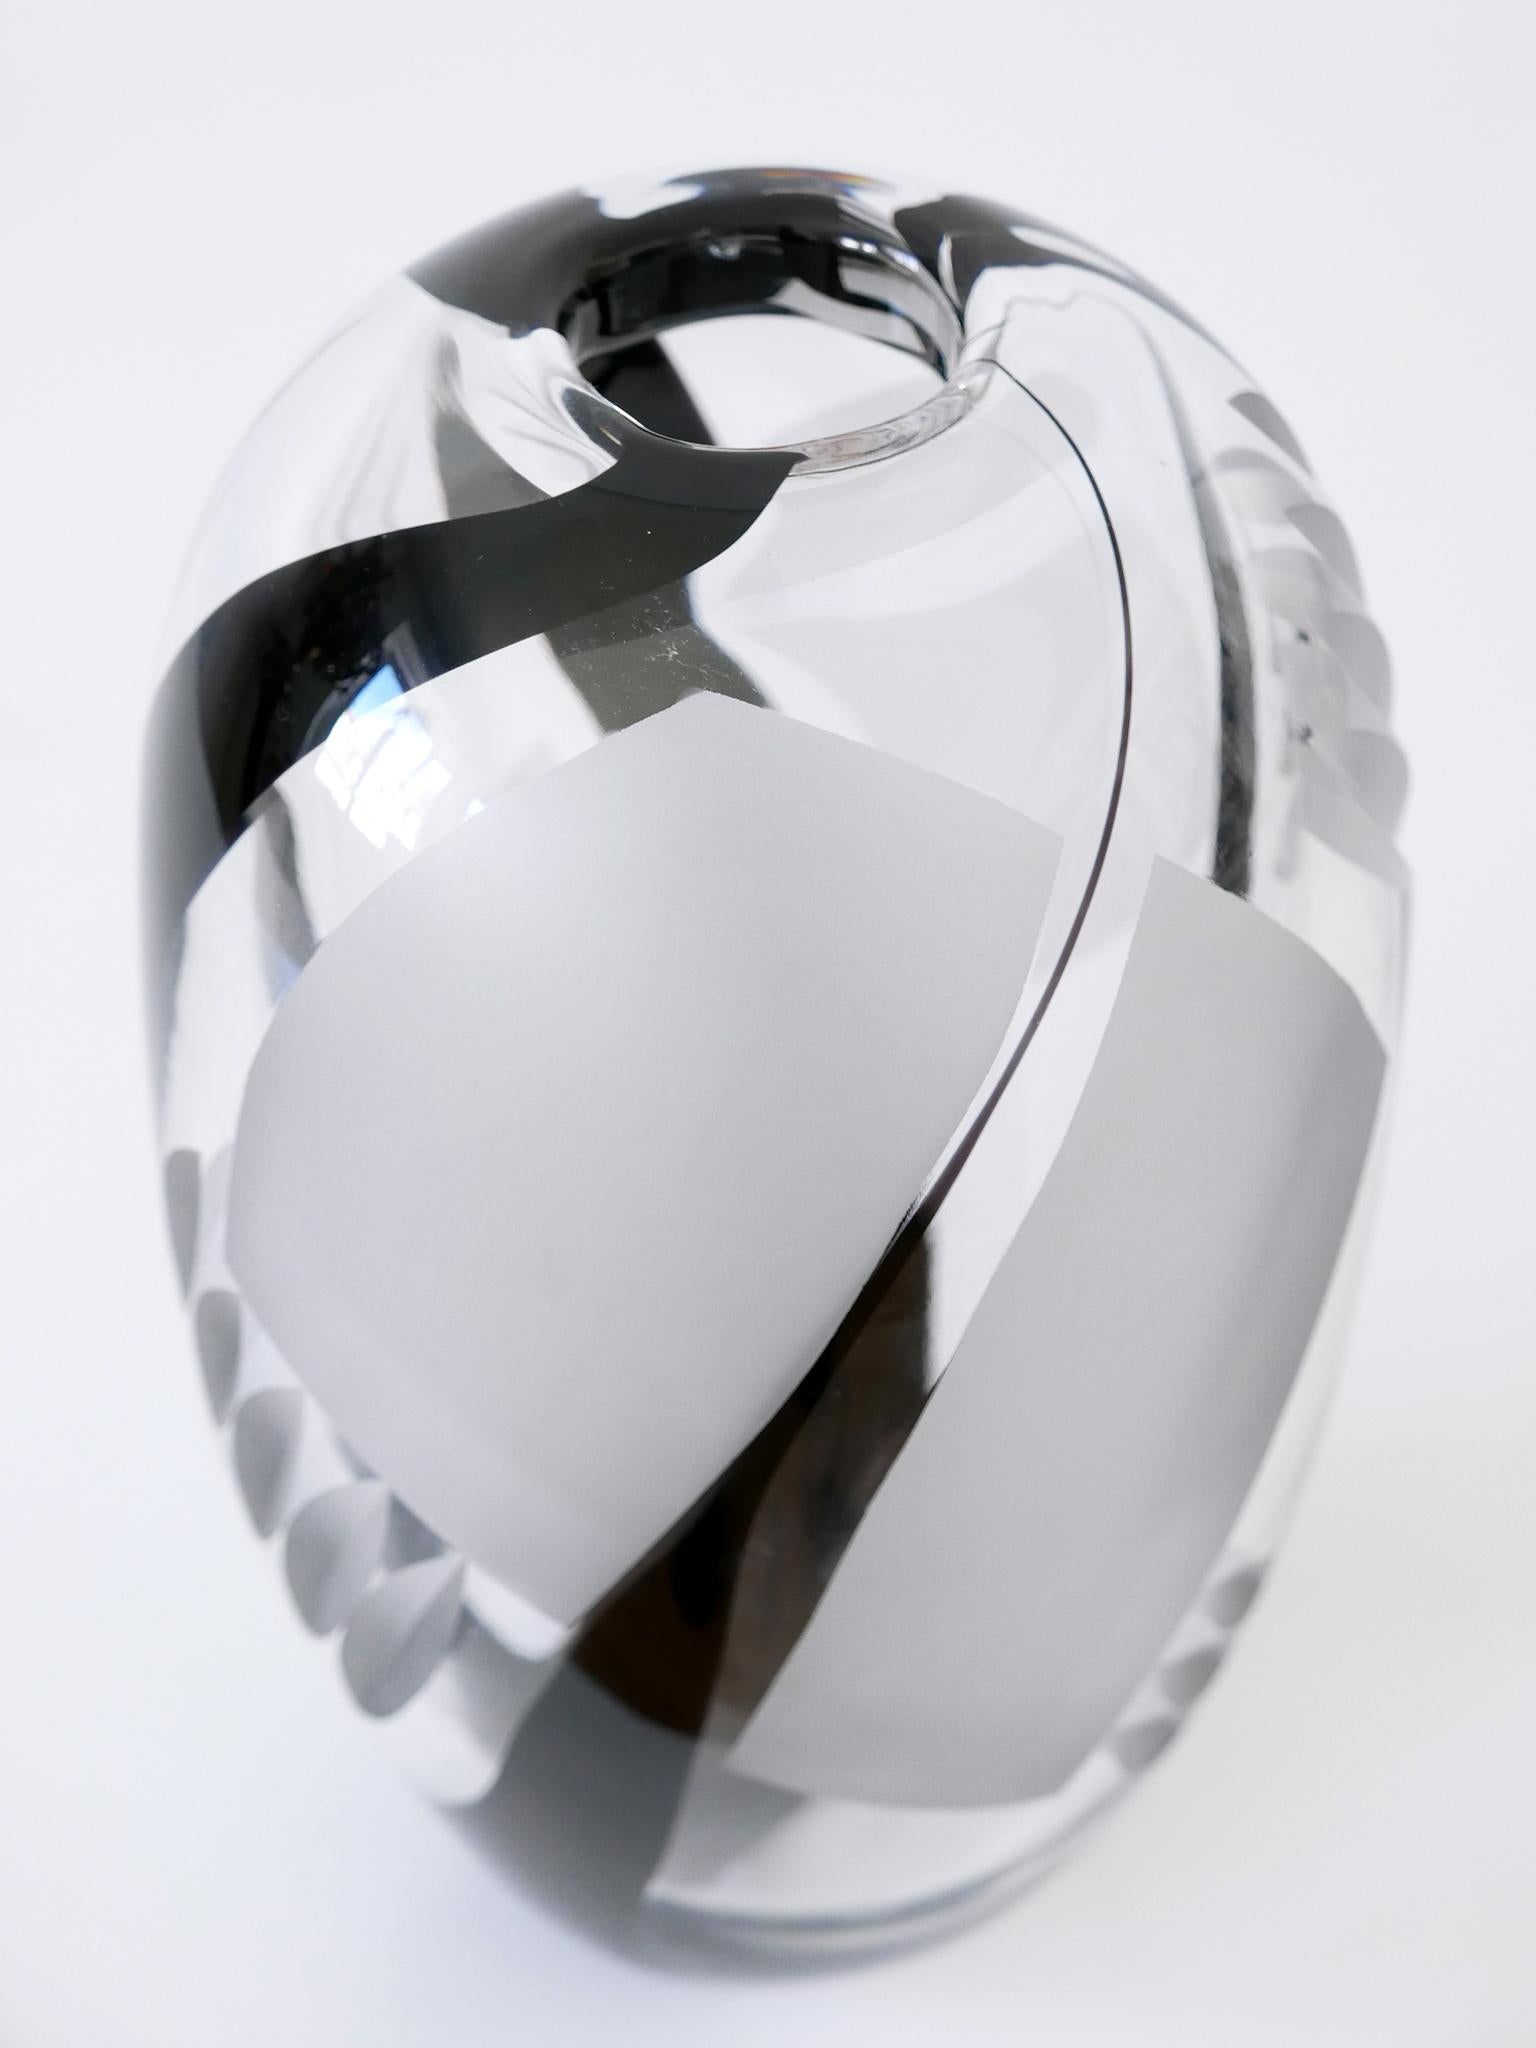 Unique Art Glass Vase by Anna Ehrer for Kosta Boda Sweden 1992 Signed For Sale 1